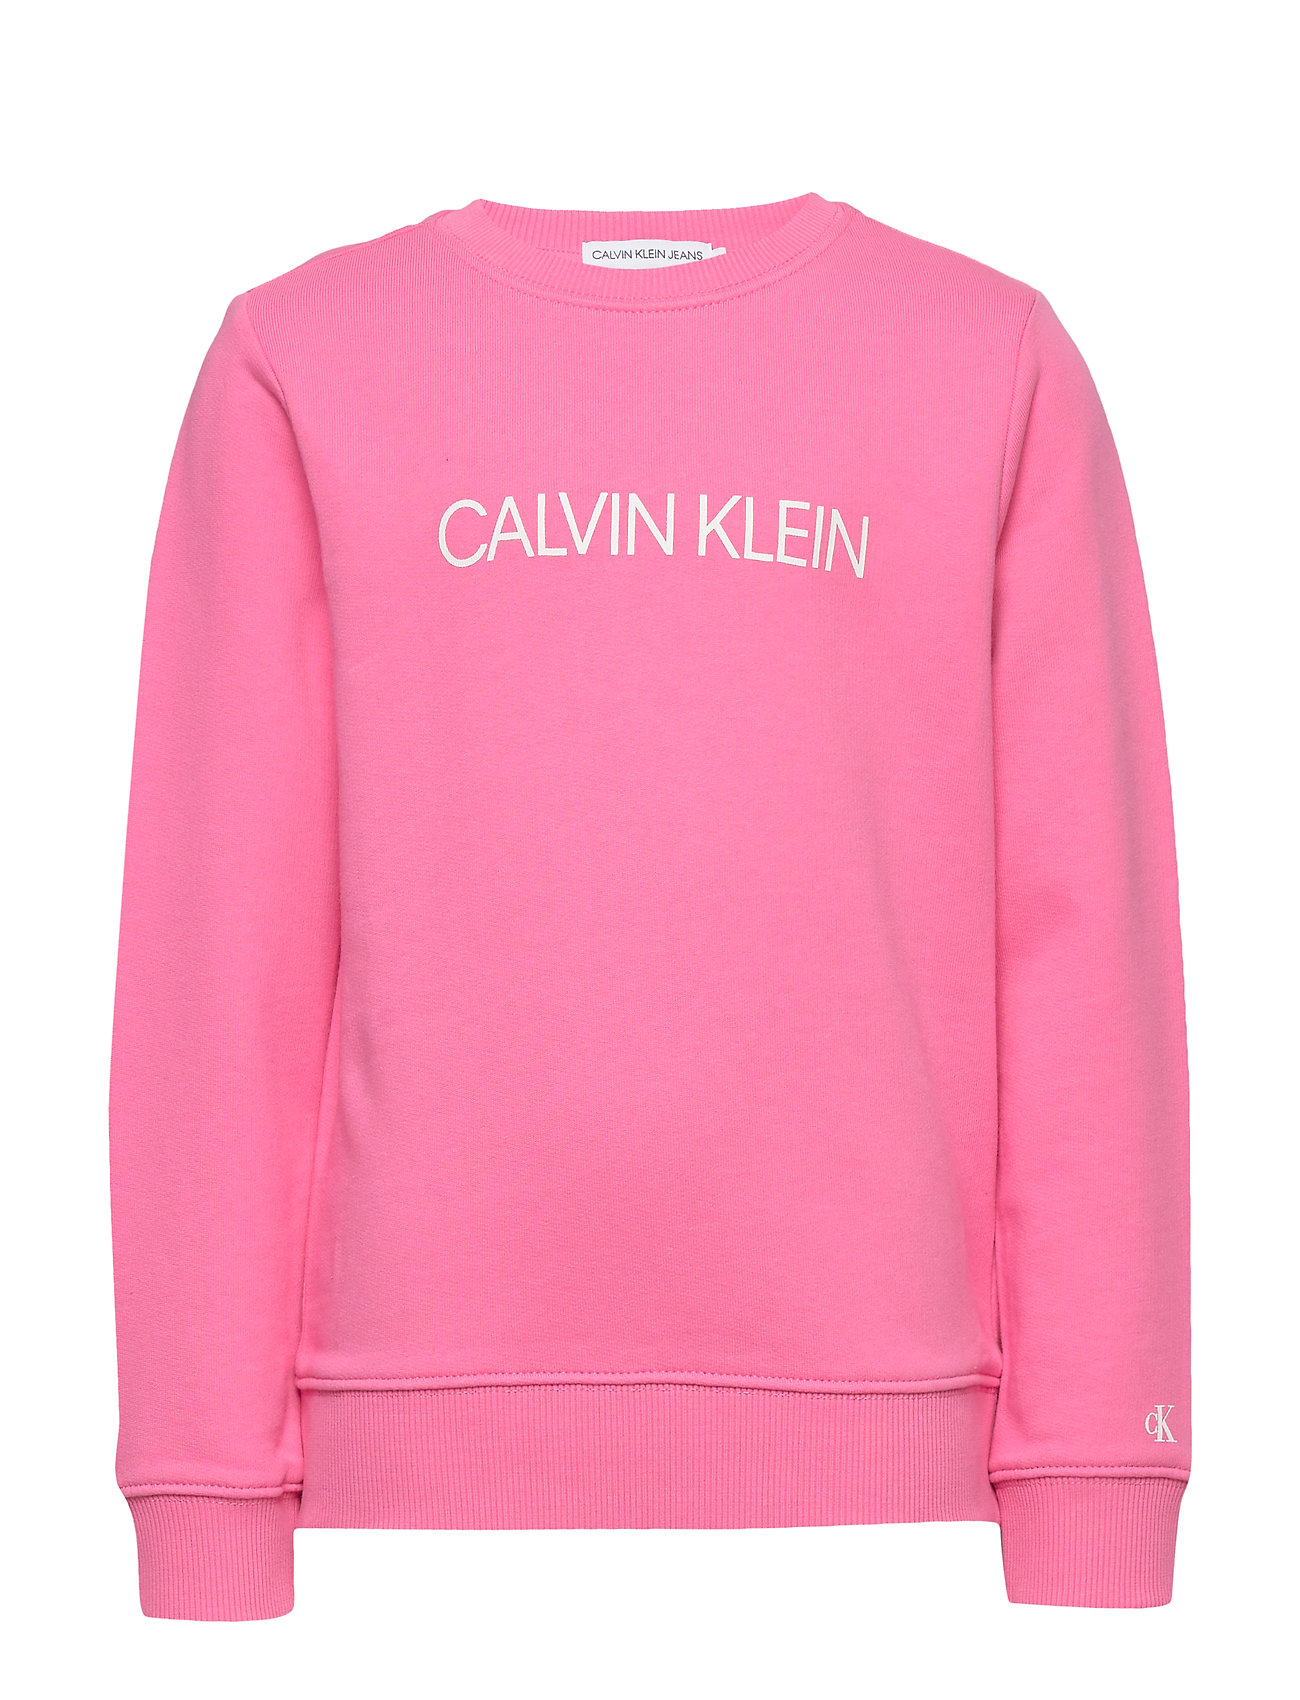 calvin klein institutional logo sweatshirt